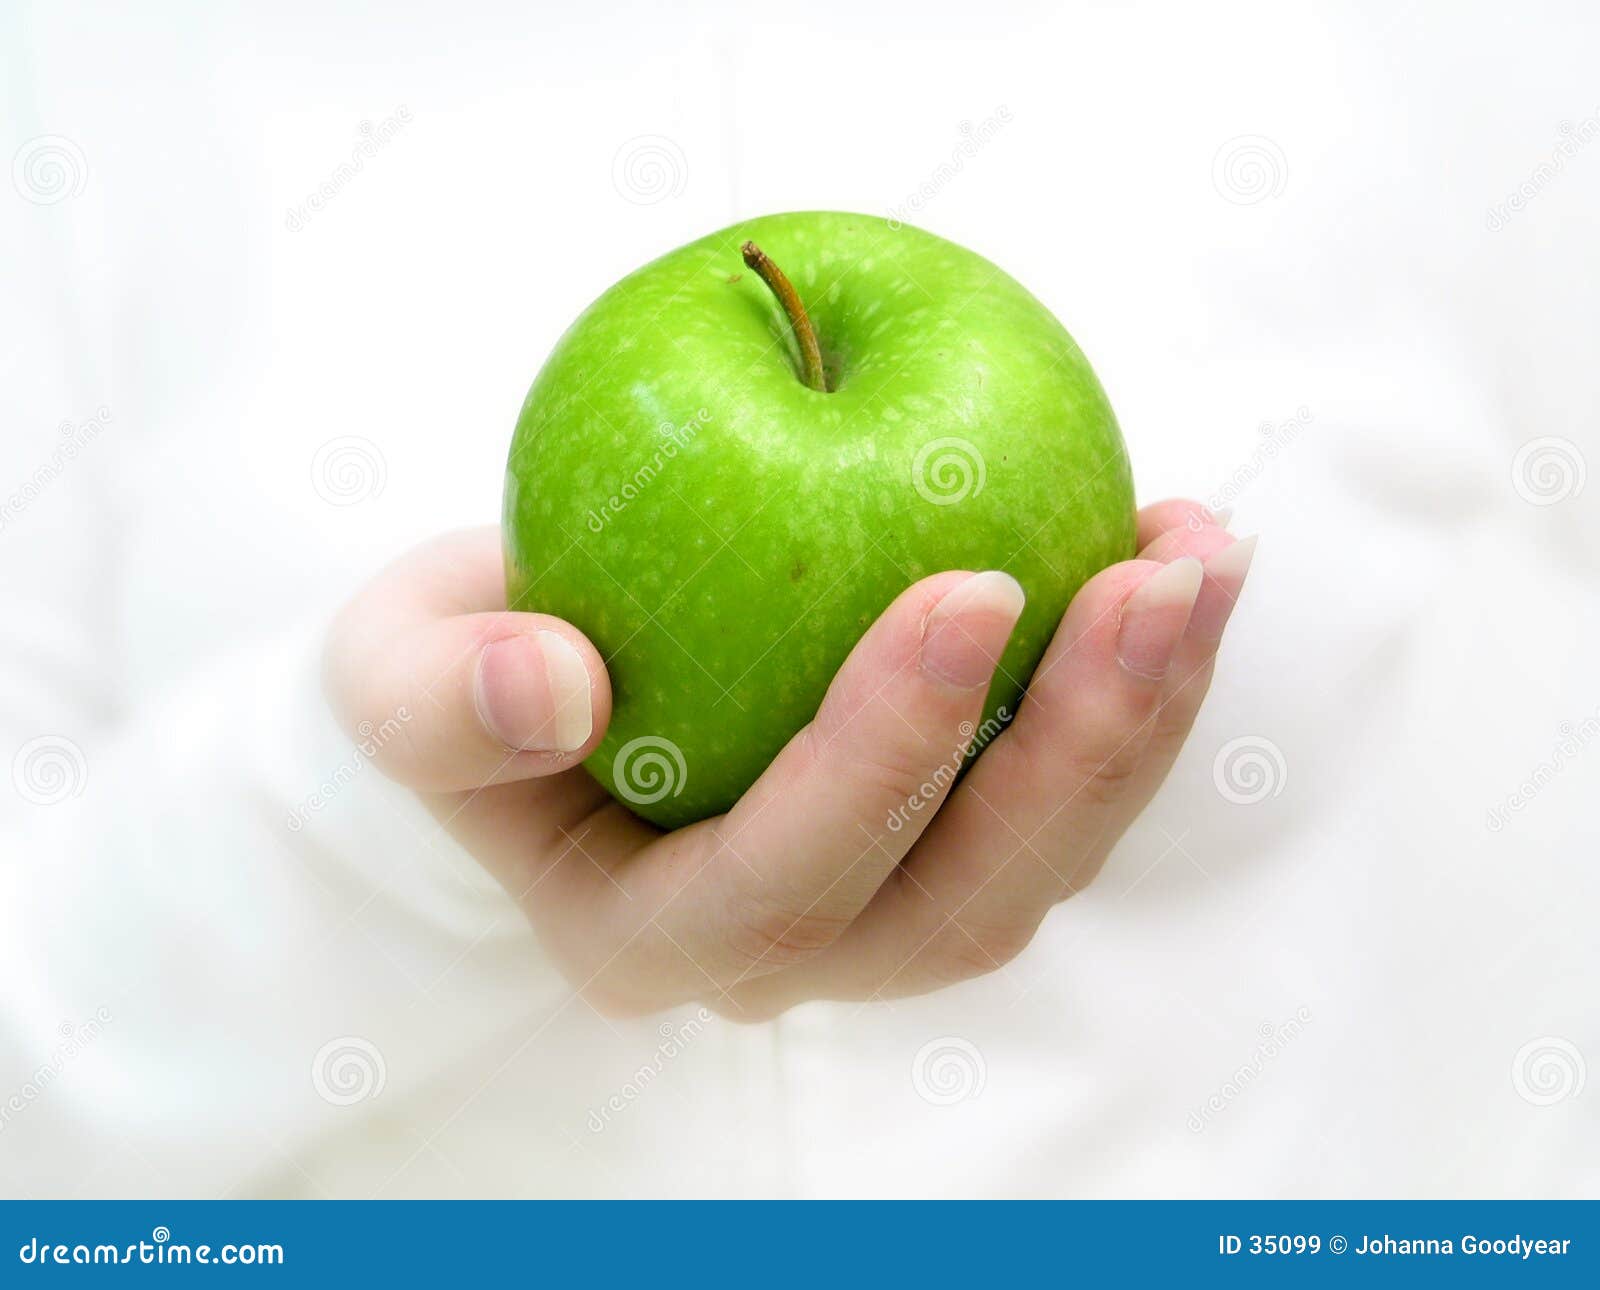 Кидает яблоко. Яблоко в руке. Девушка держит яблоко в руке. Яблоки зеленые. Девушка с яблоком на ладони.